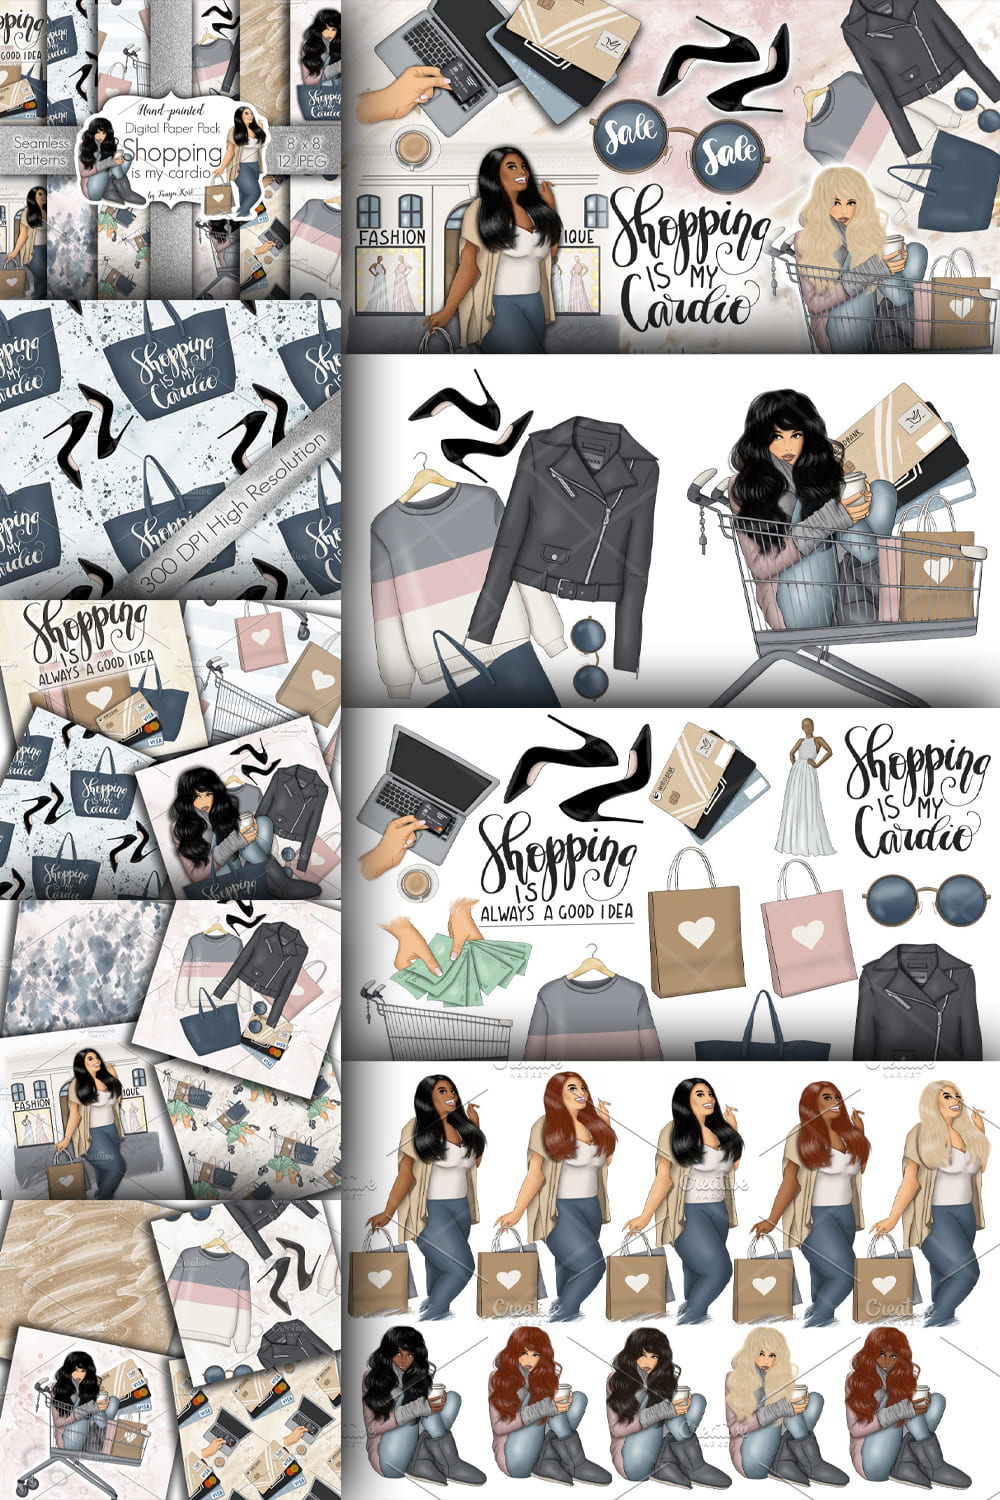 Shopping Clipart & Patterns - Pinterest.